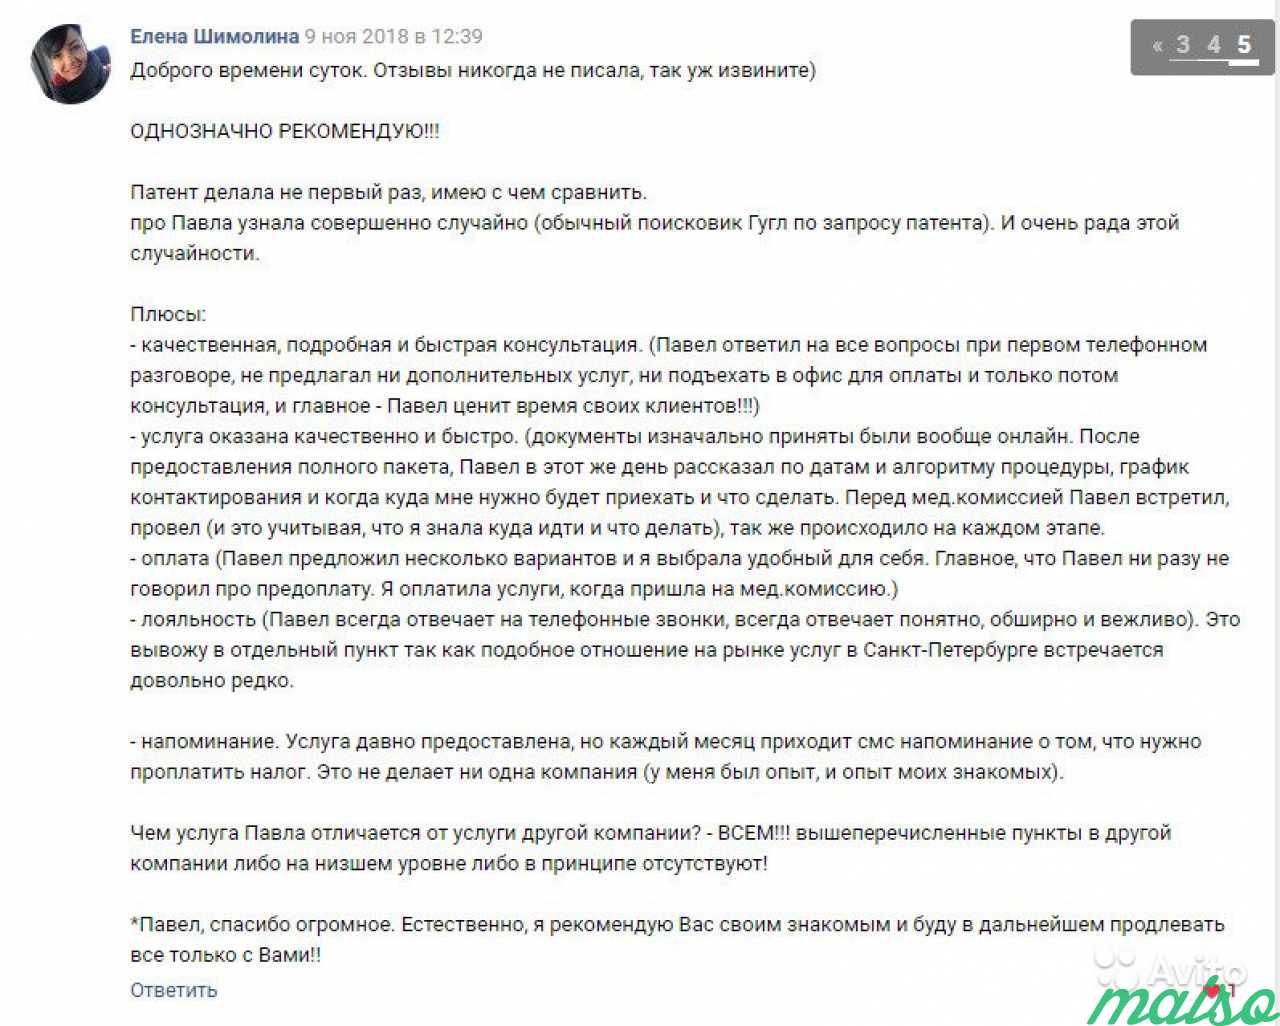 Патент на работу в спб. Более 90 отзывов в вк в Санкт-Петербурге. Фото 9